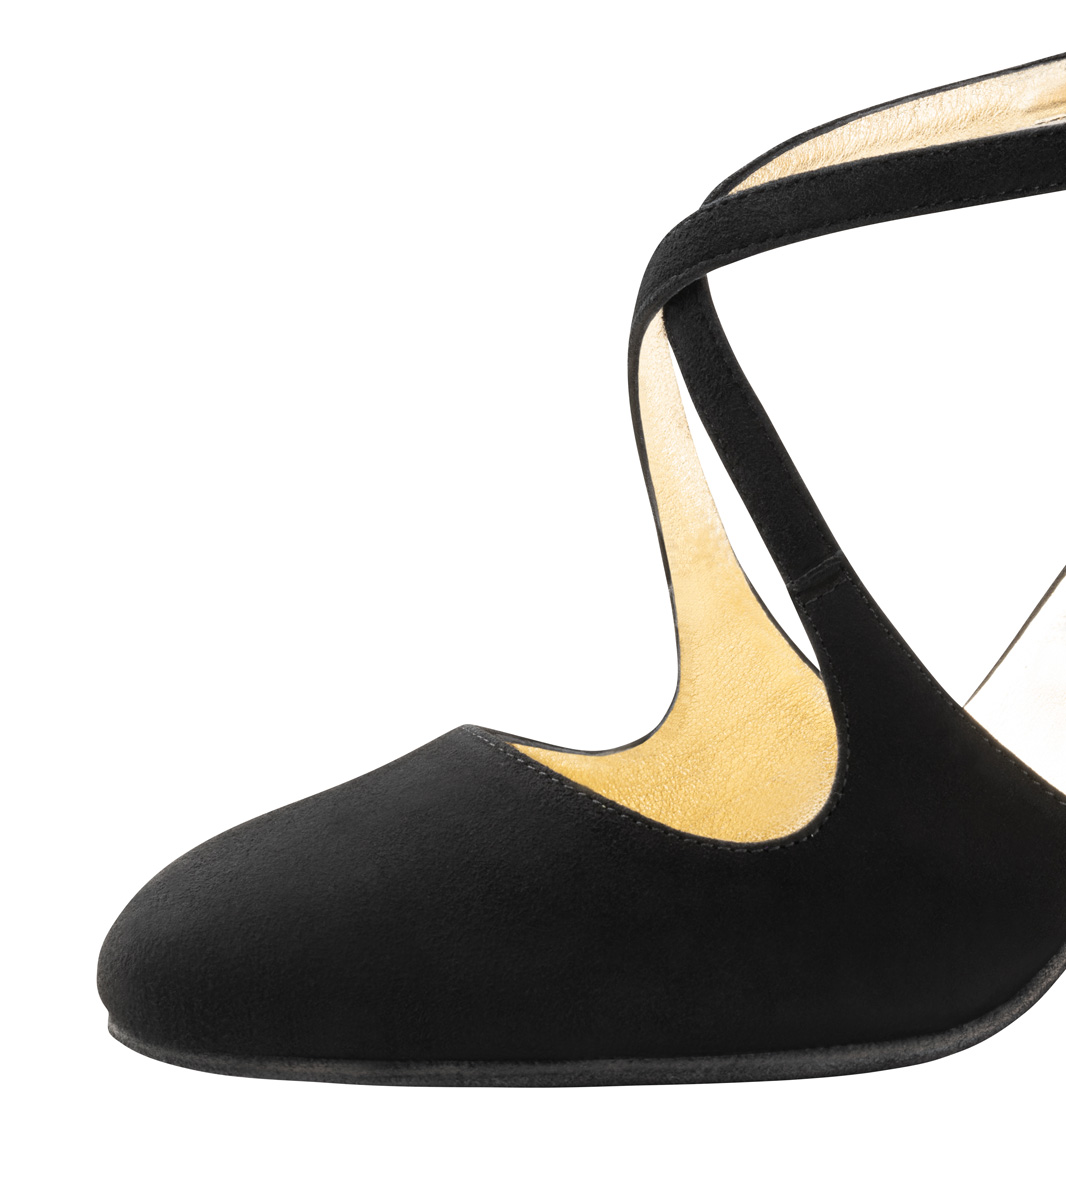 Detailed view of Nueva Epoca women's dance shoe with heel height 8 cm